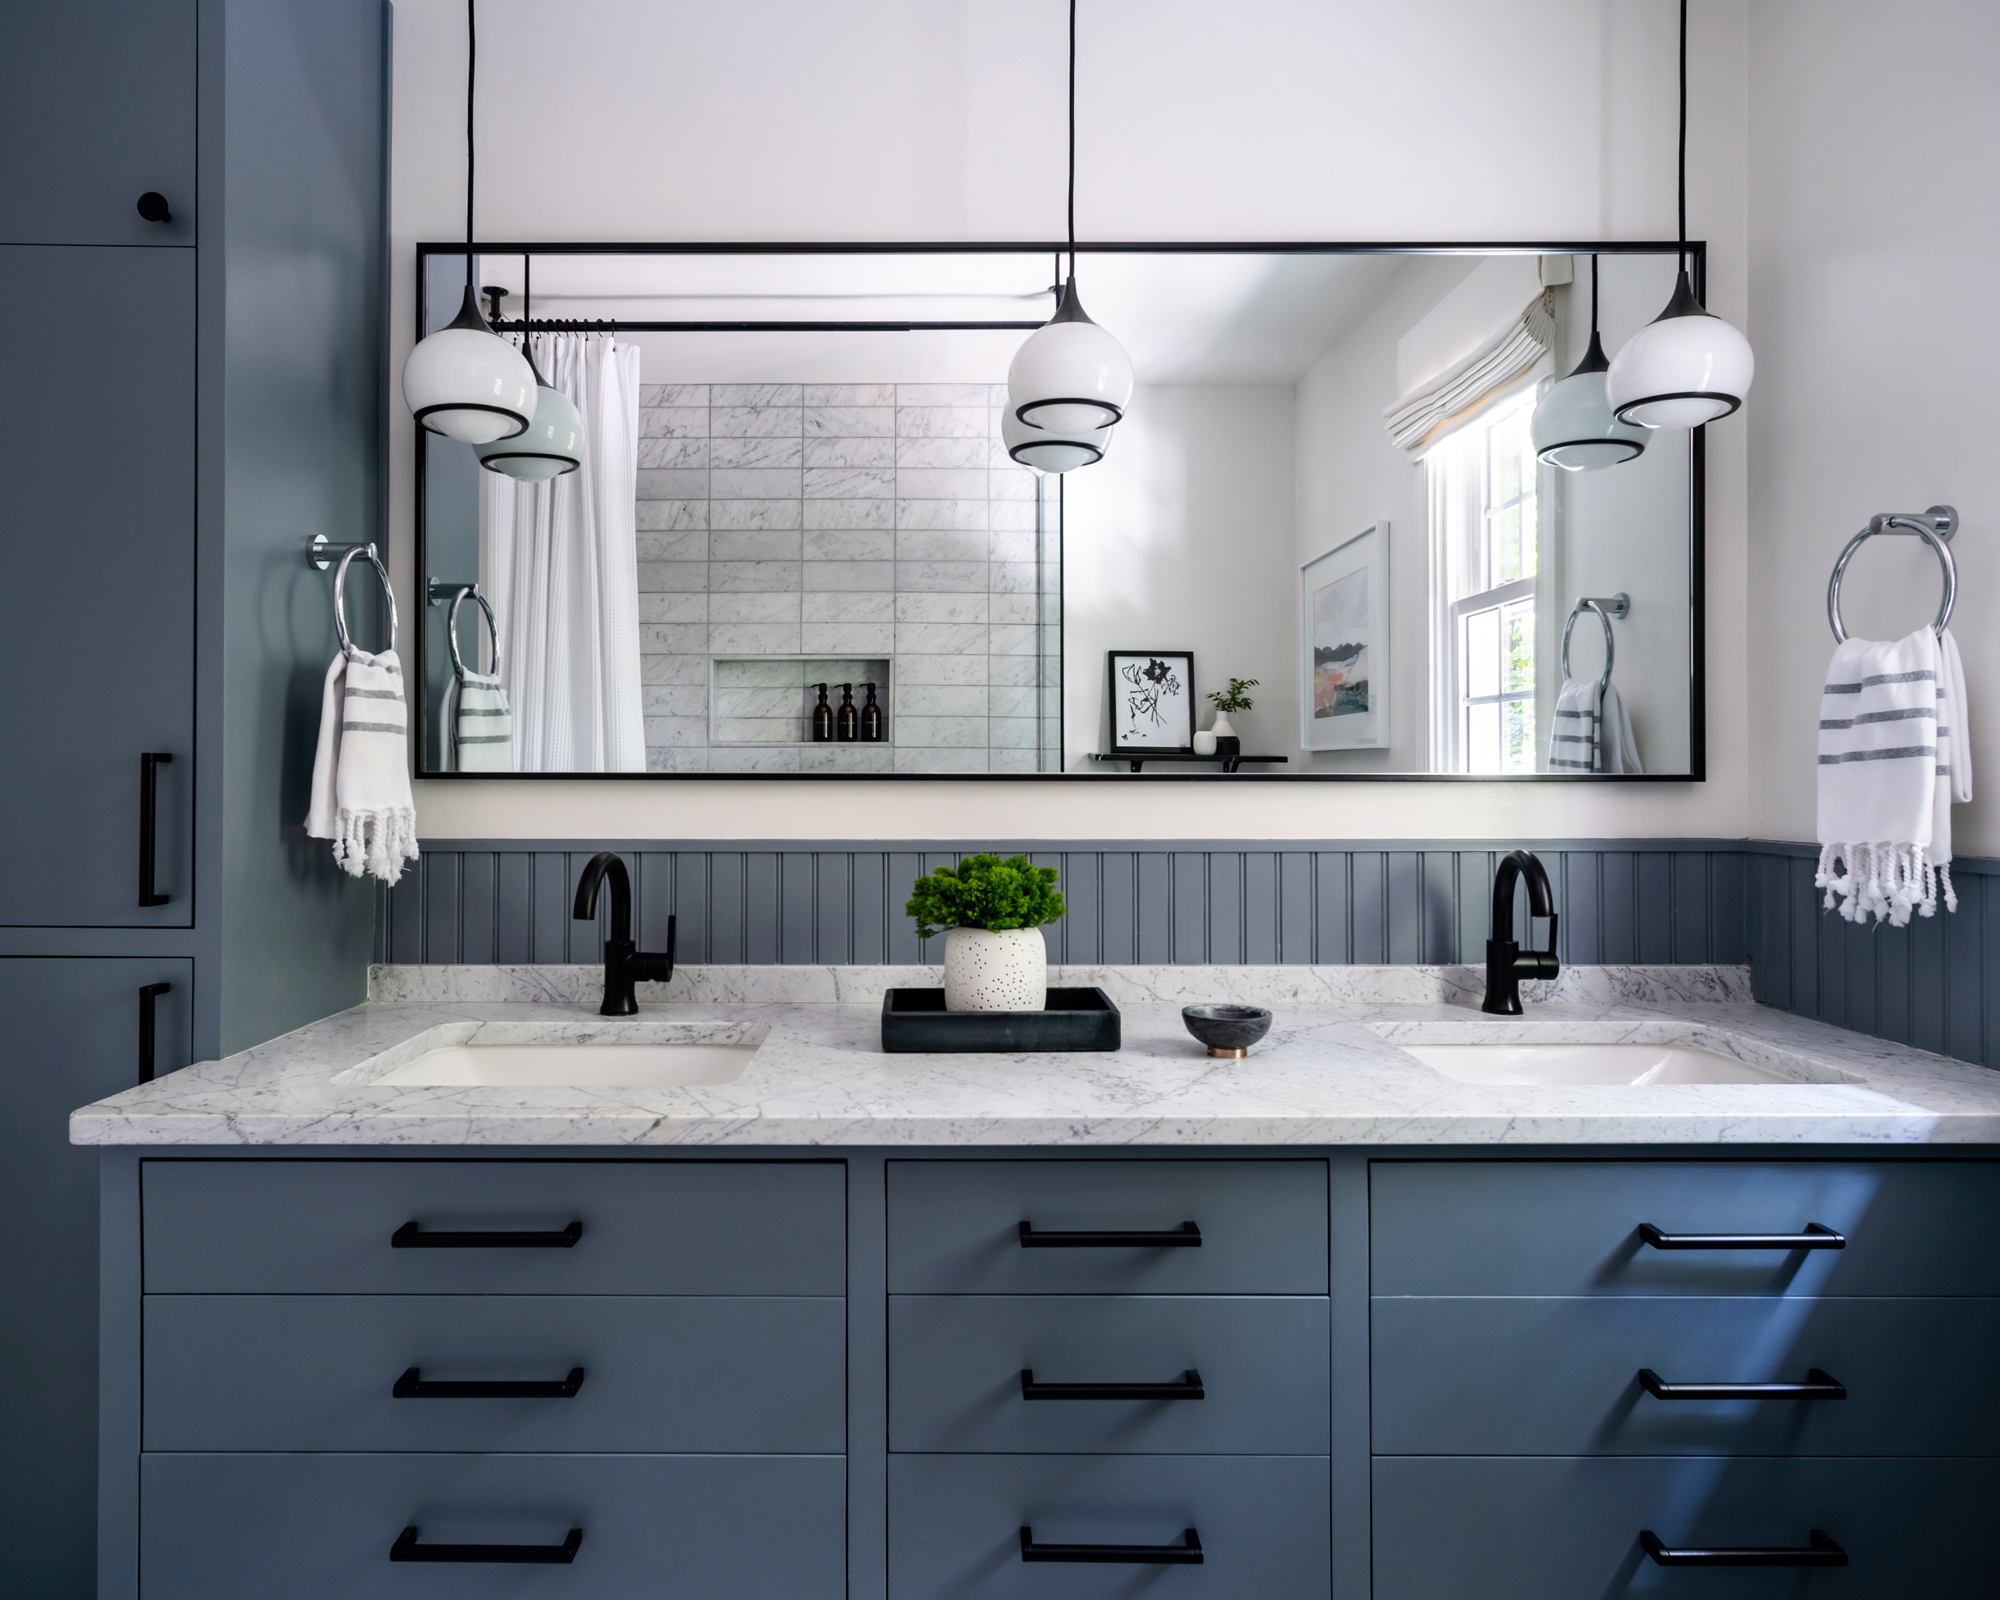 Un baño con gabinetes azules, herrajes negros y luces colgantes, y una encimera de mármol blanco y gris en el tocador, con un gran espejo detrás